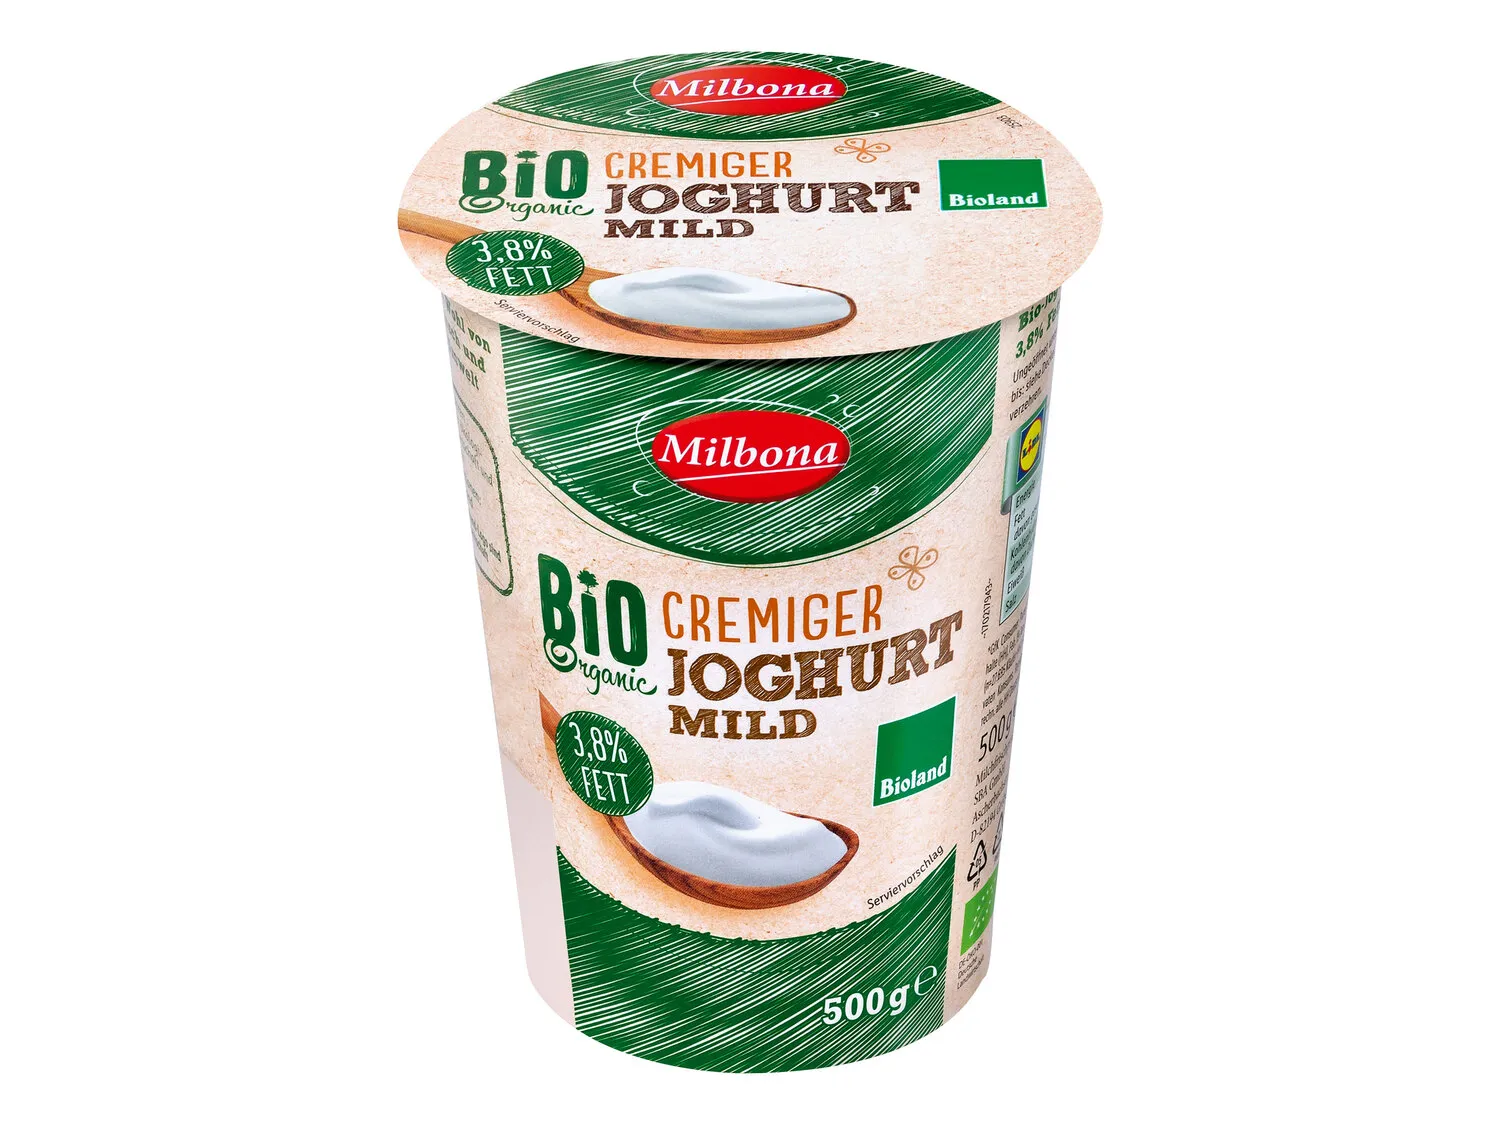 Bioland Joghurt, mild - Lidl Deutschland